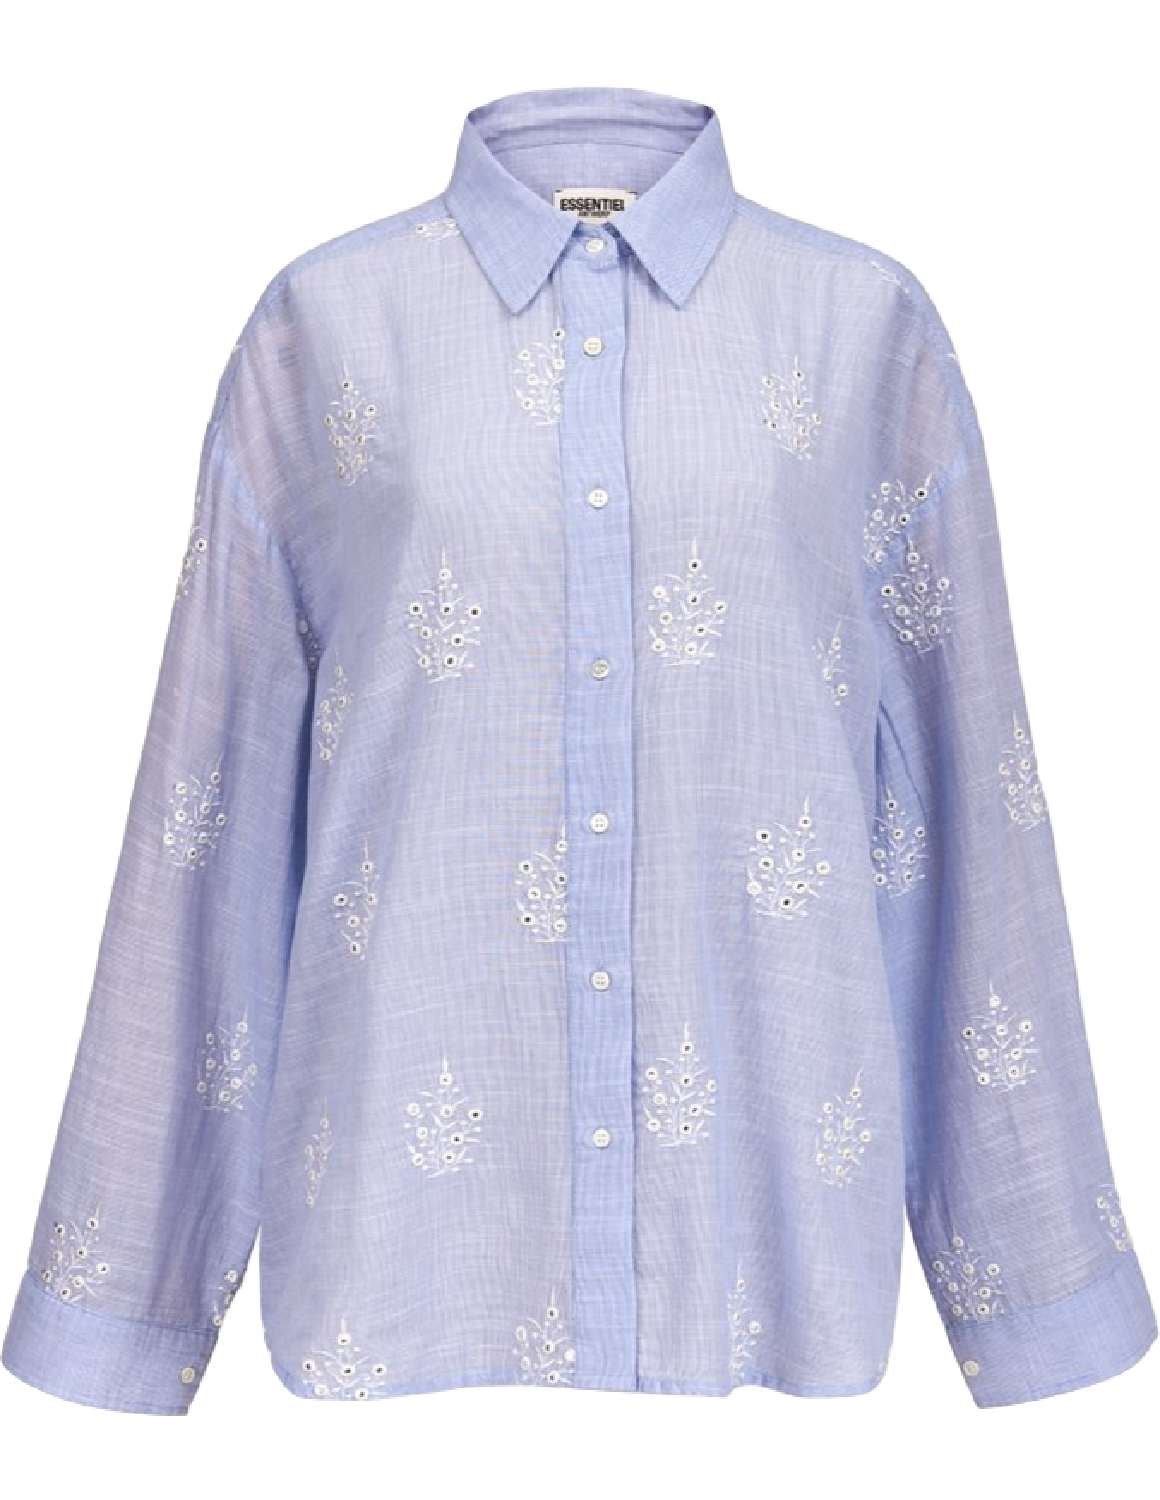 Essentiel Antwerp vuntuck embroidered cotton shirt - light blue